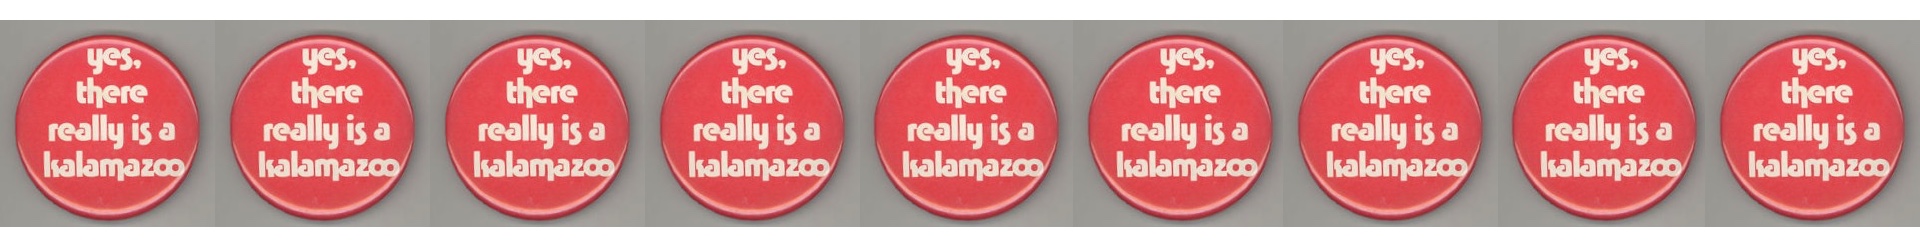 Yes Kalamazoo